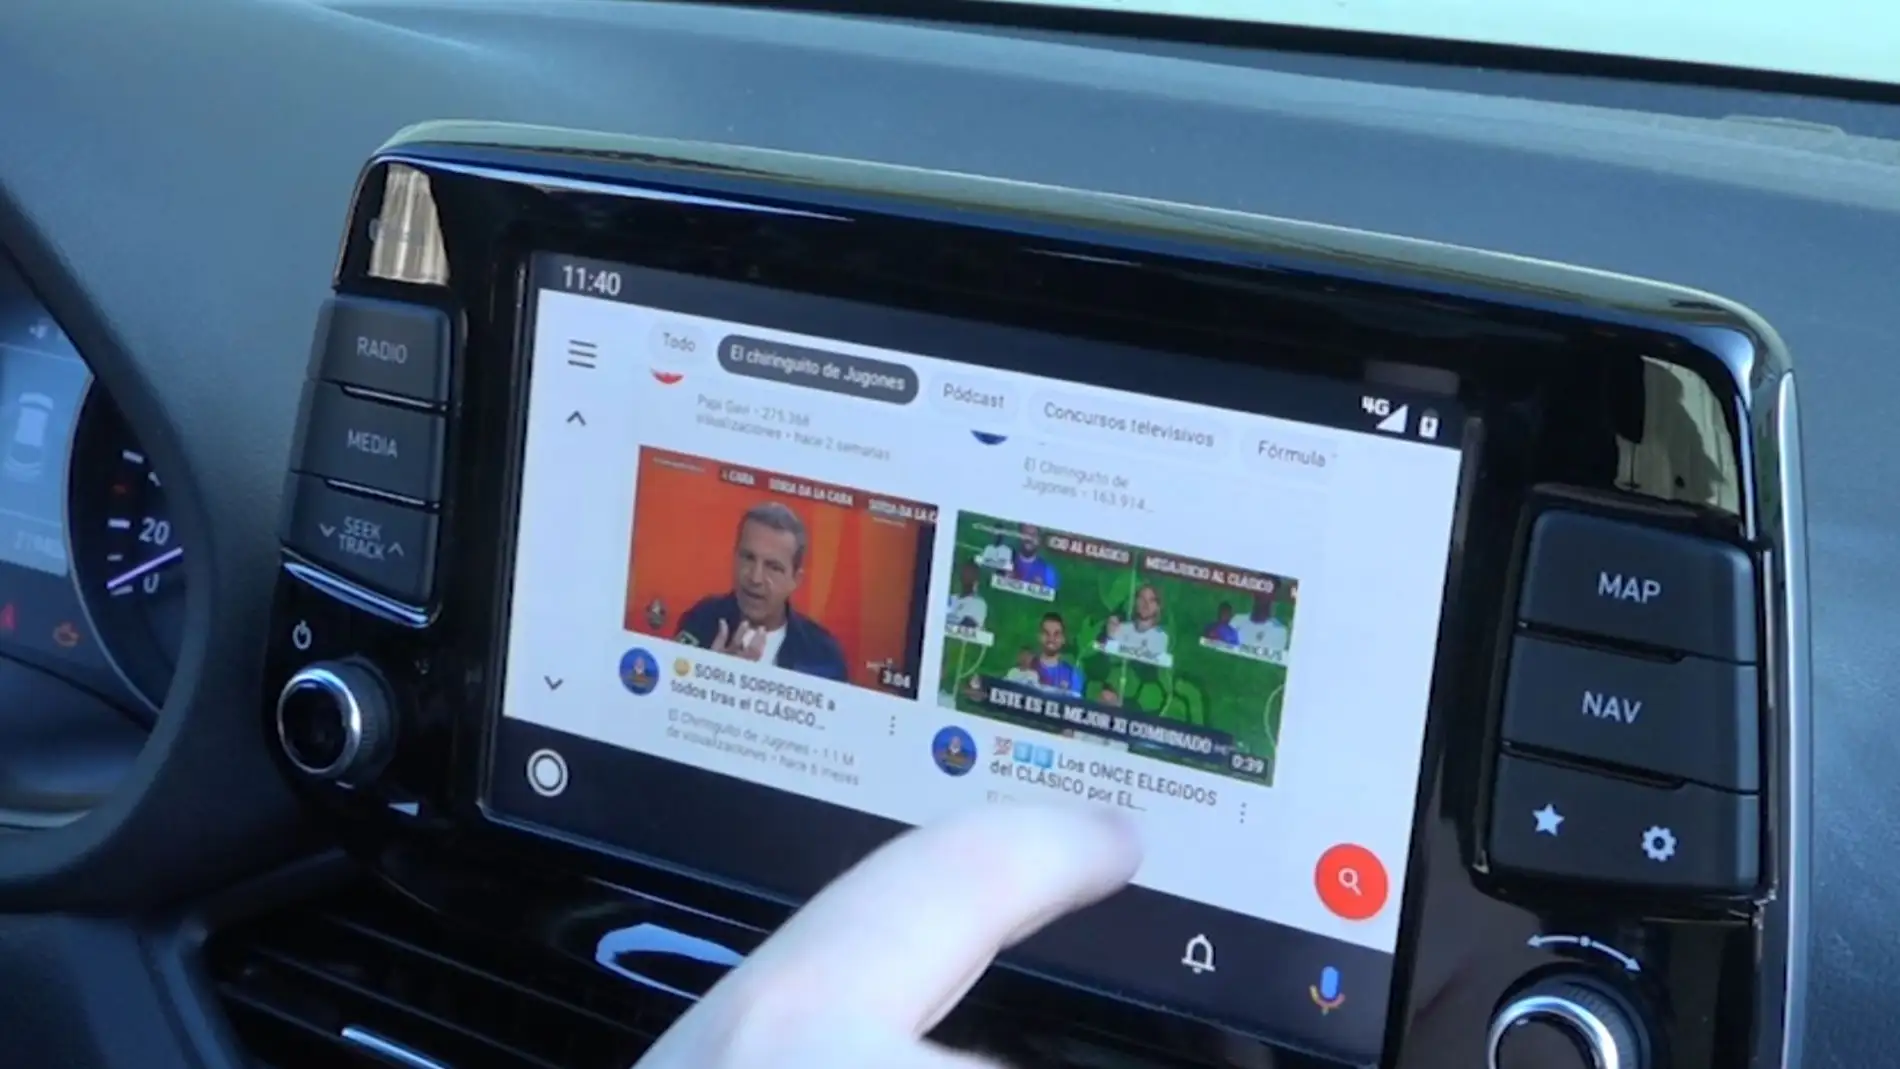 Android Auto: con esta aplicación podrá utilizar la pantalla de su